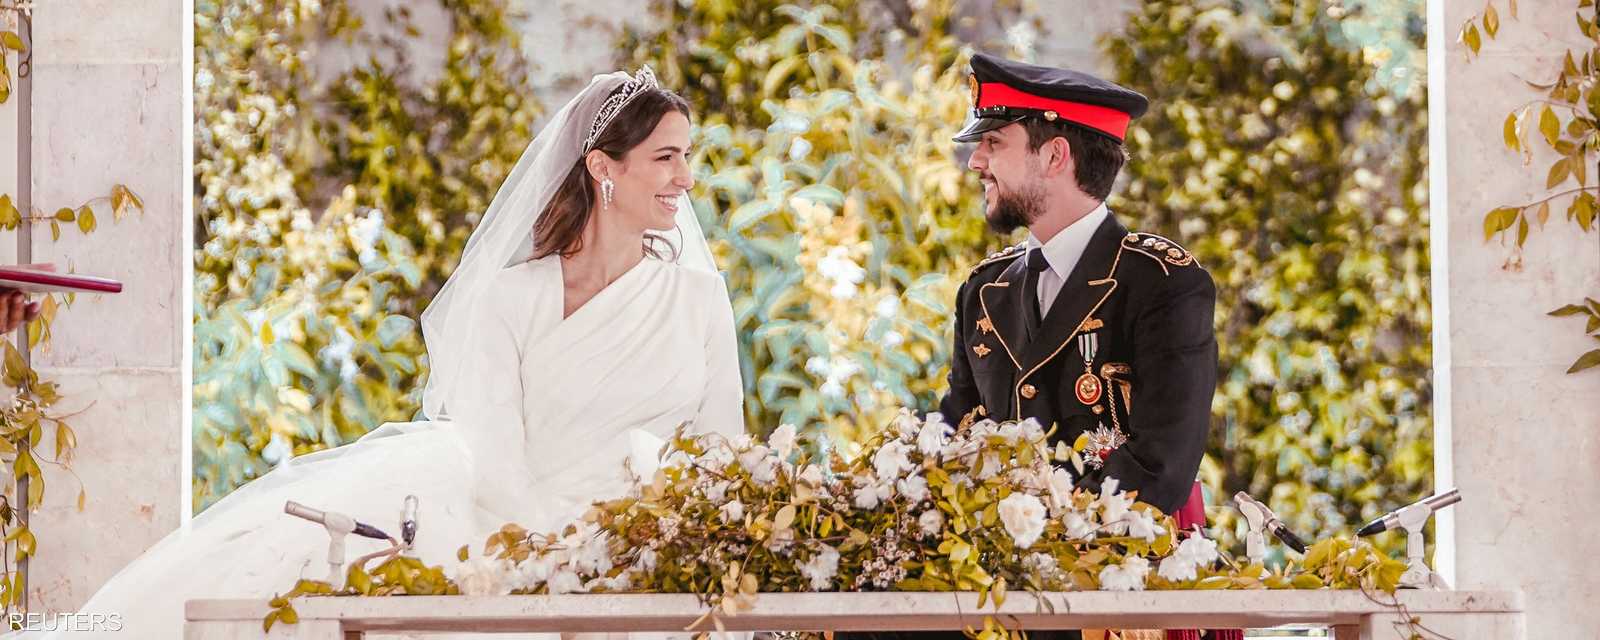 احتفل ولي عهد الأردن الأمير الحسين بن عبد الله الثاني ولي العهد الأردني بزفافه على الأميرة رجوة الحسين، اليوم الخميس، في حفل مبهر حظي بمتابعة كبيرة.